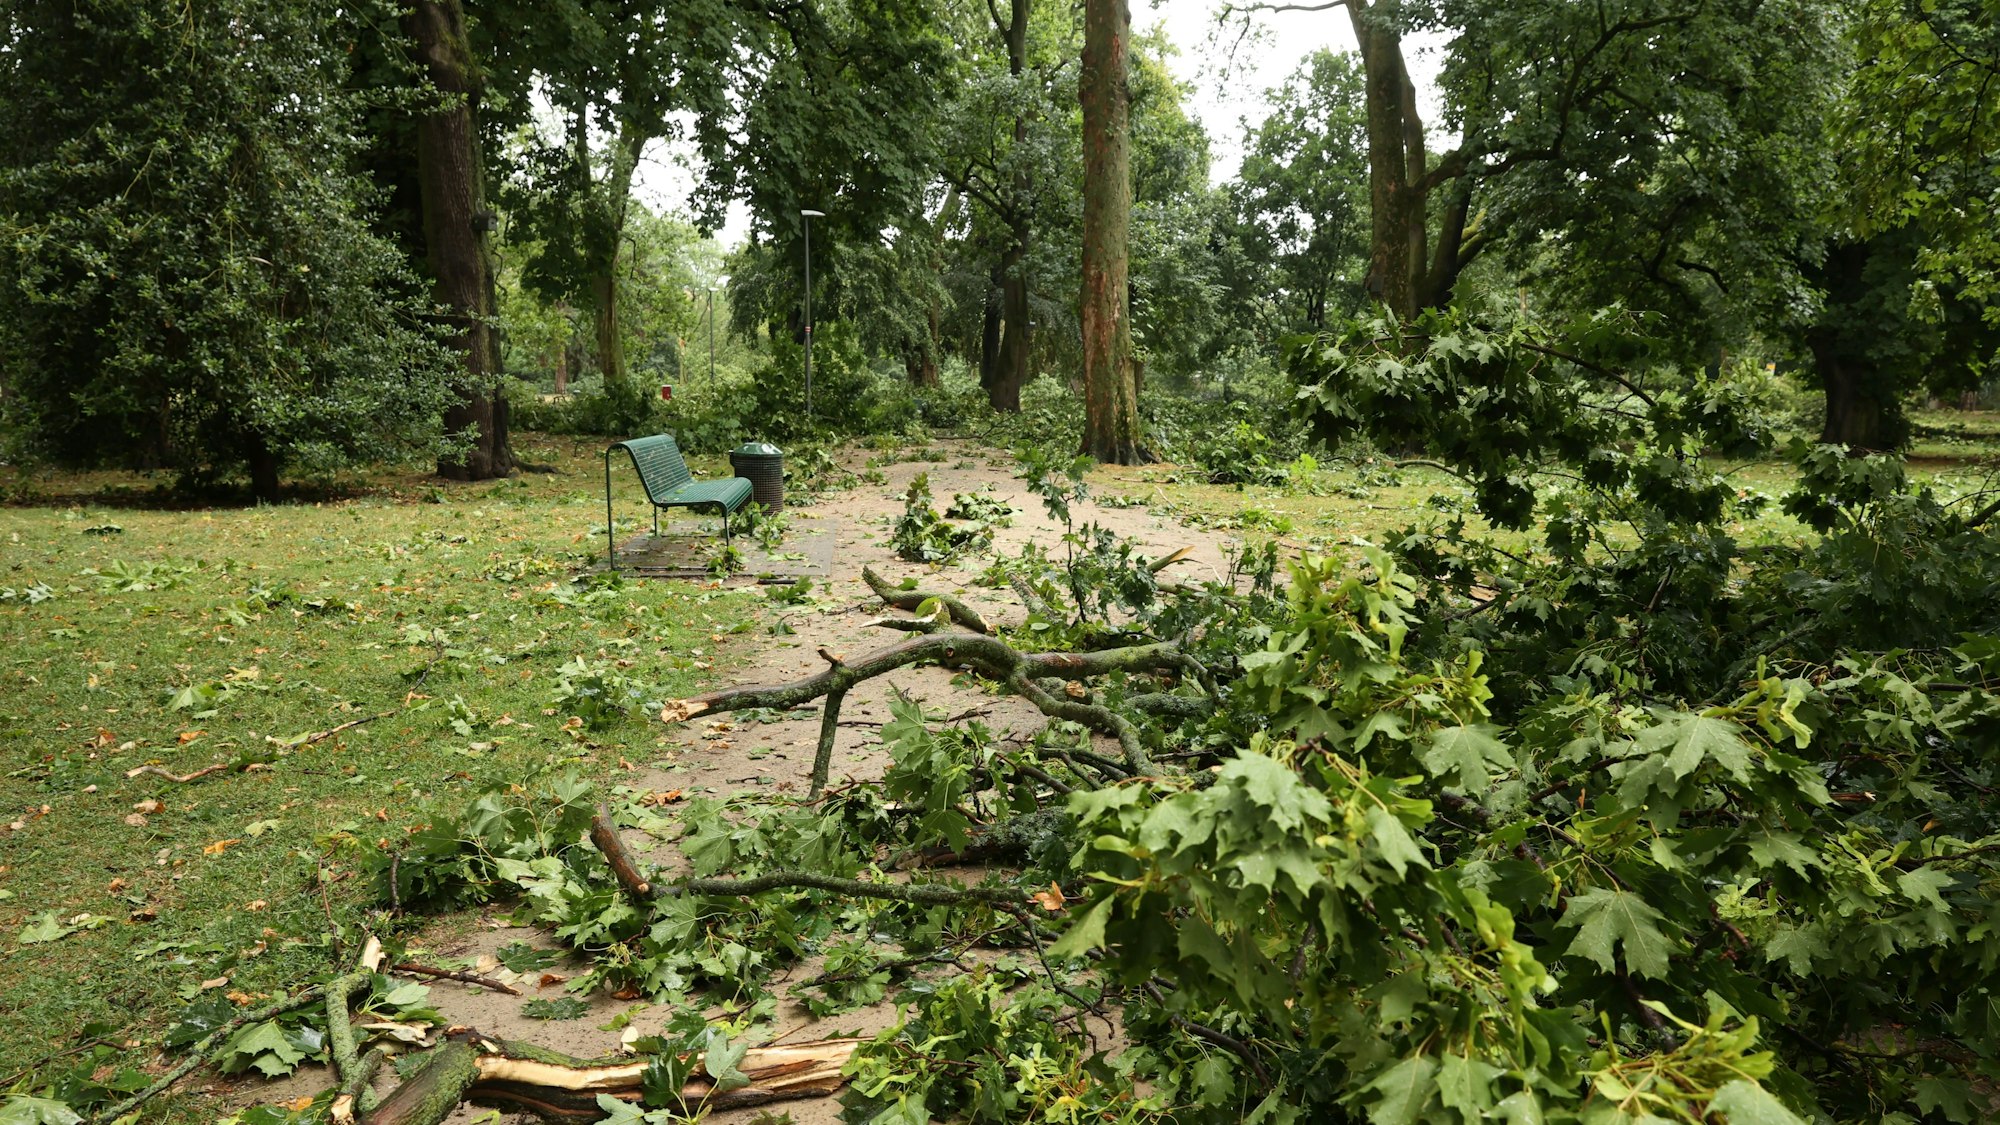 Unwetter in Köln am 24. Juli: An zahlreichen Orten im Stadtgarten sind Äste herabgefallen.

